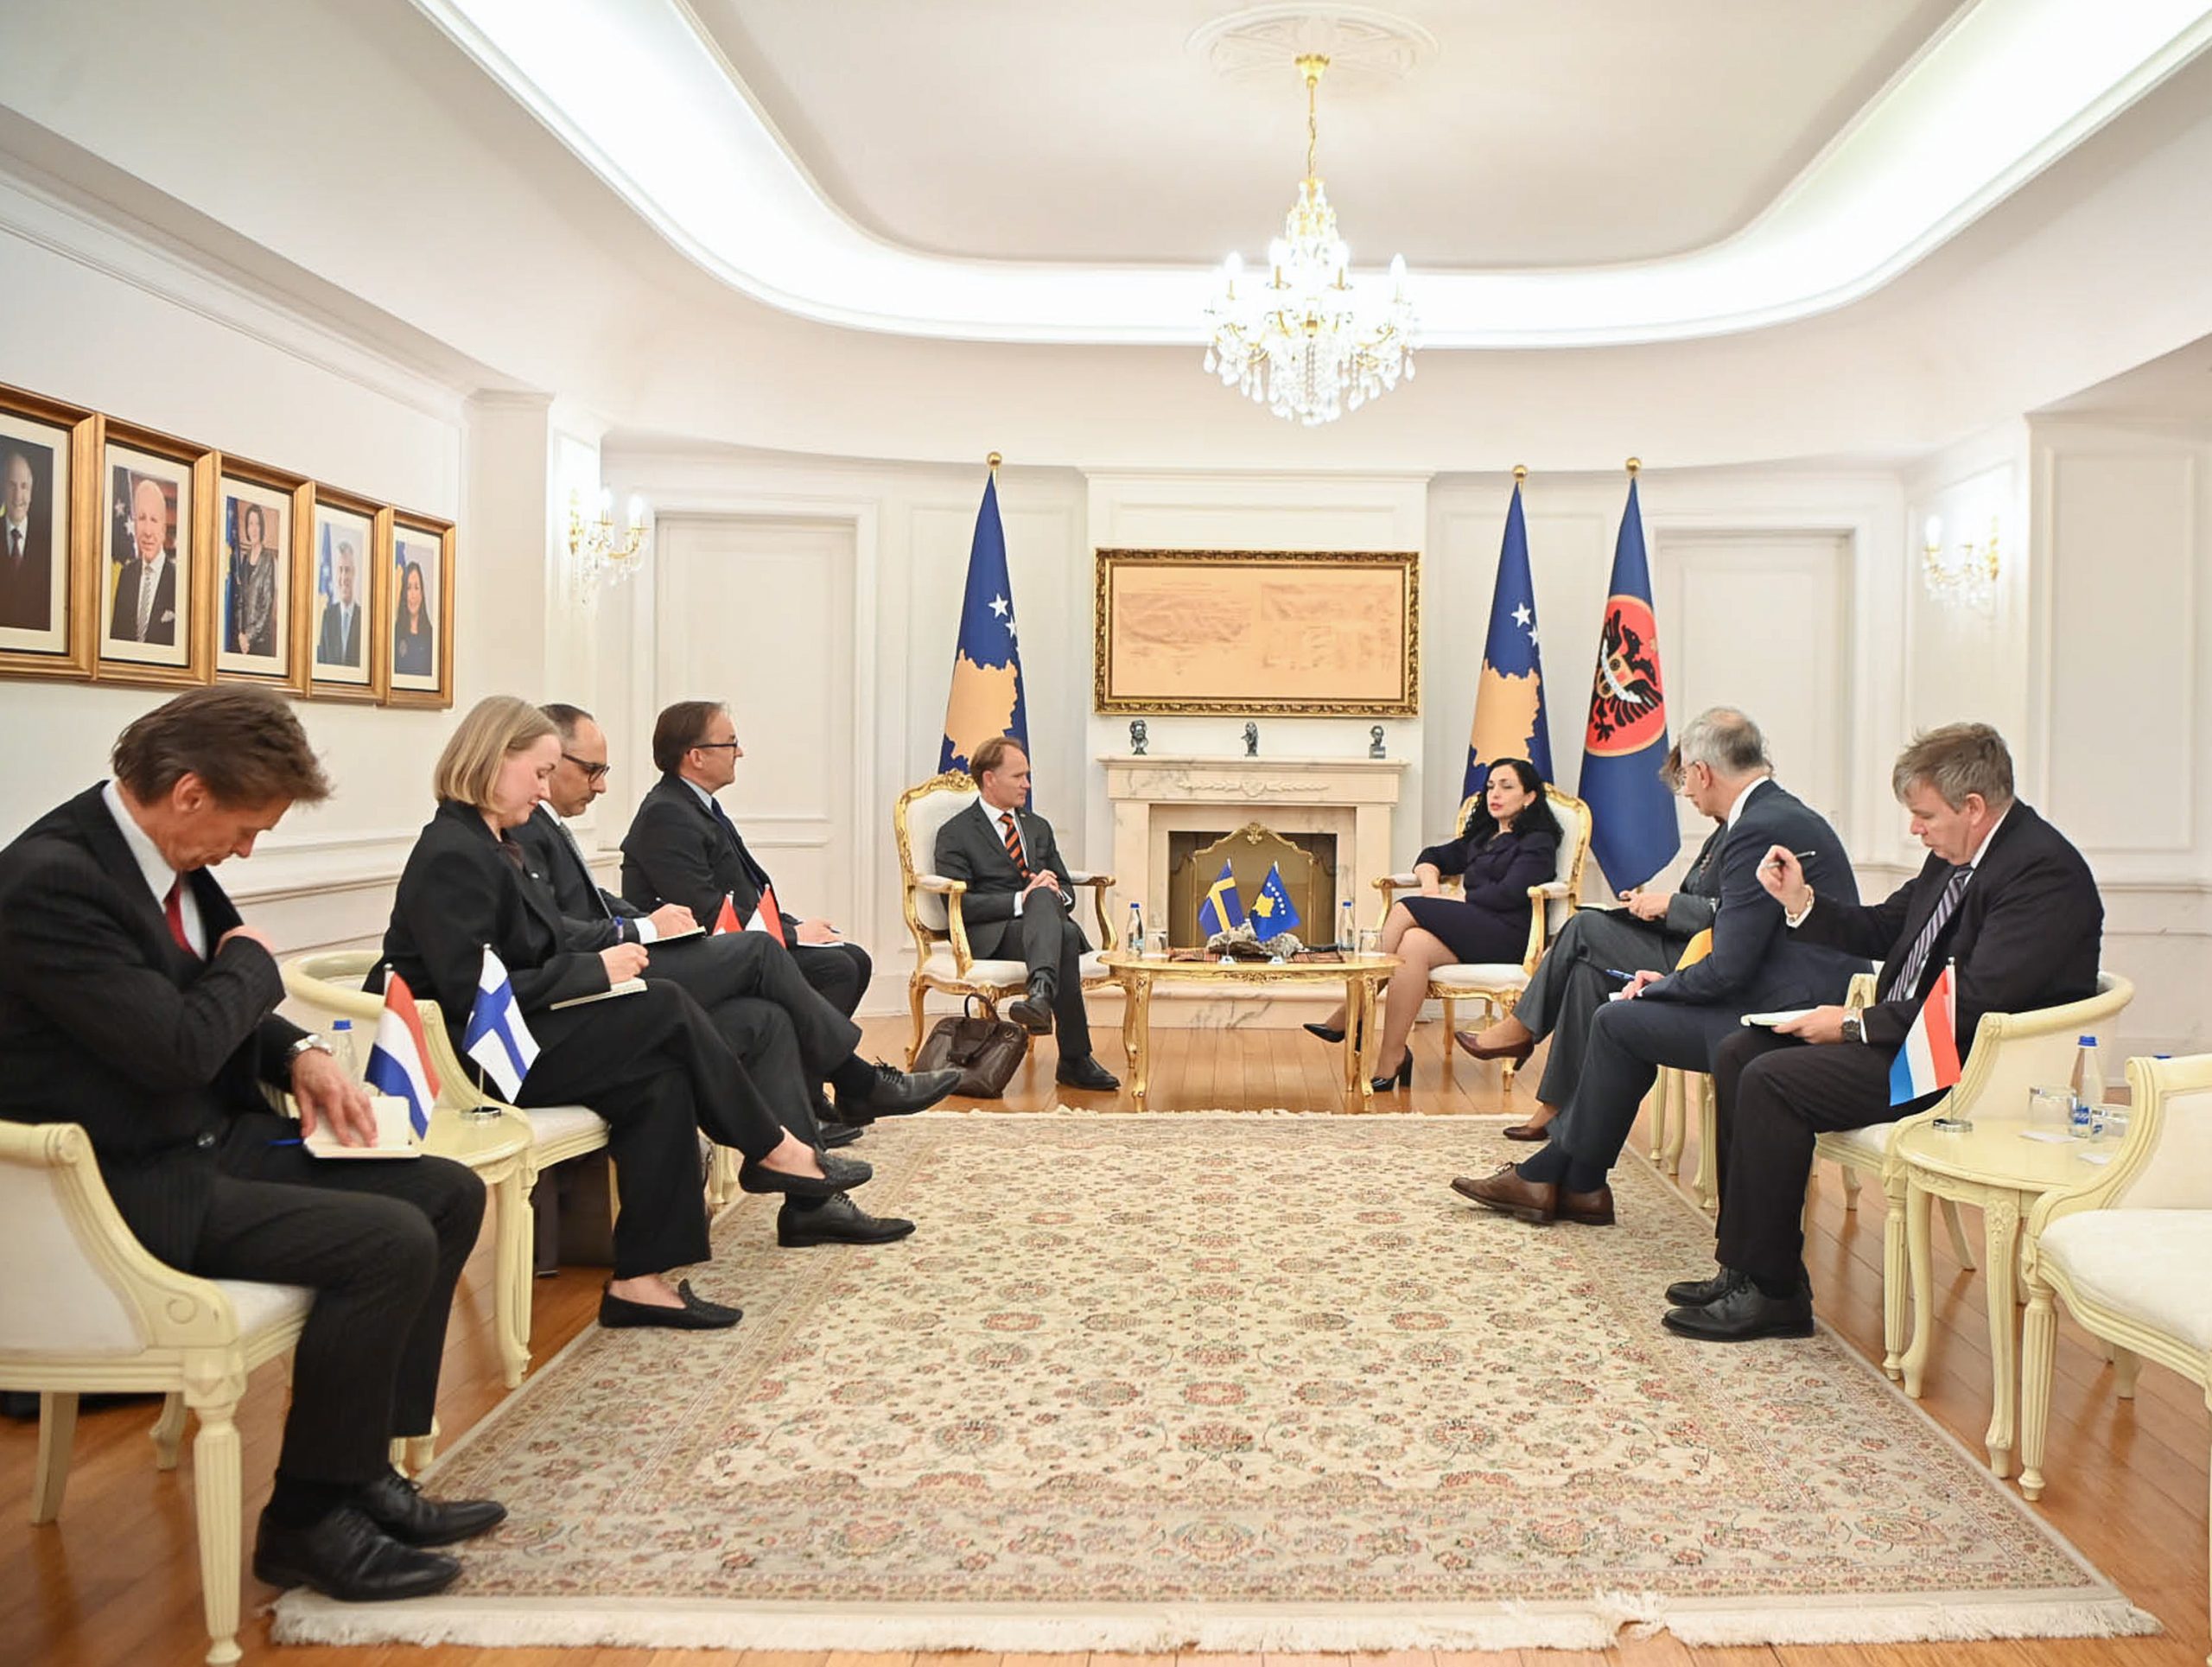 Presidentja Osmani priti në takim përfaqësues diplomatik të disa shteteve anëtare në Këshillin e Evropës